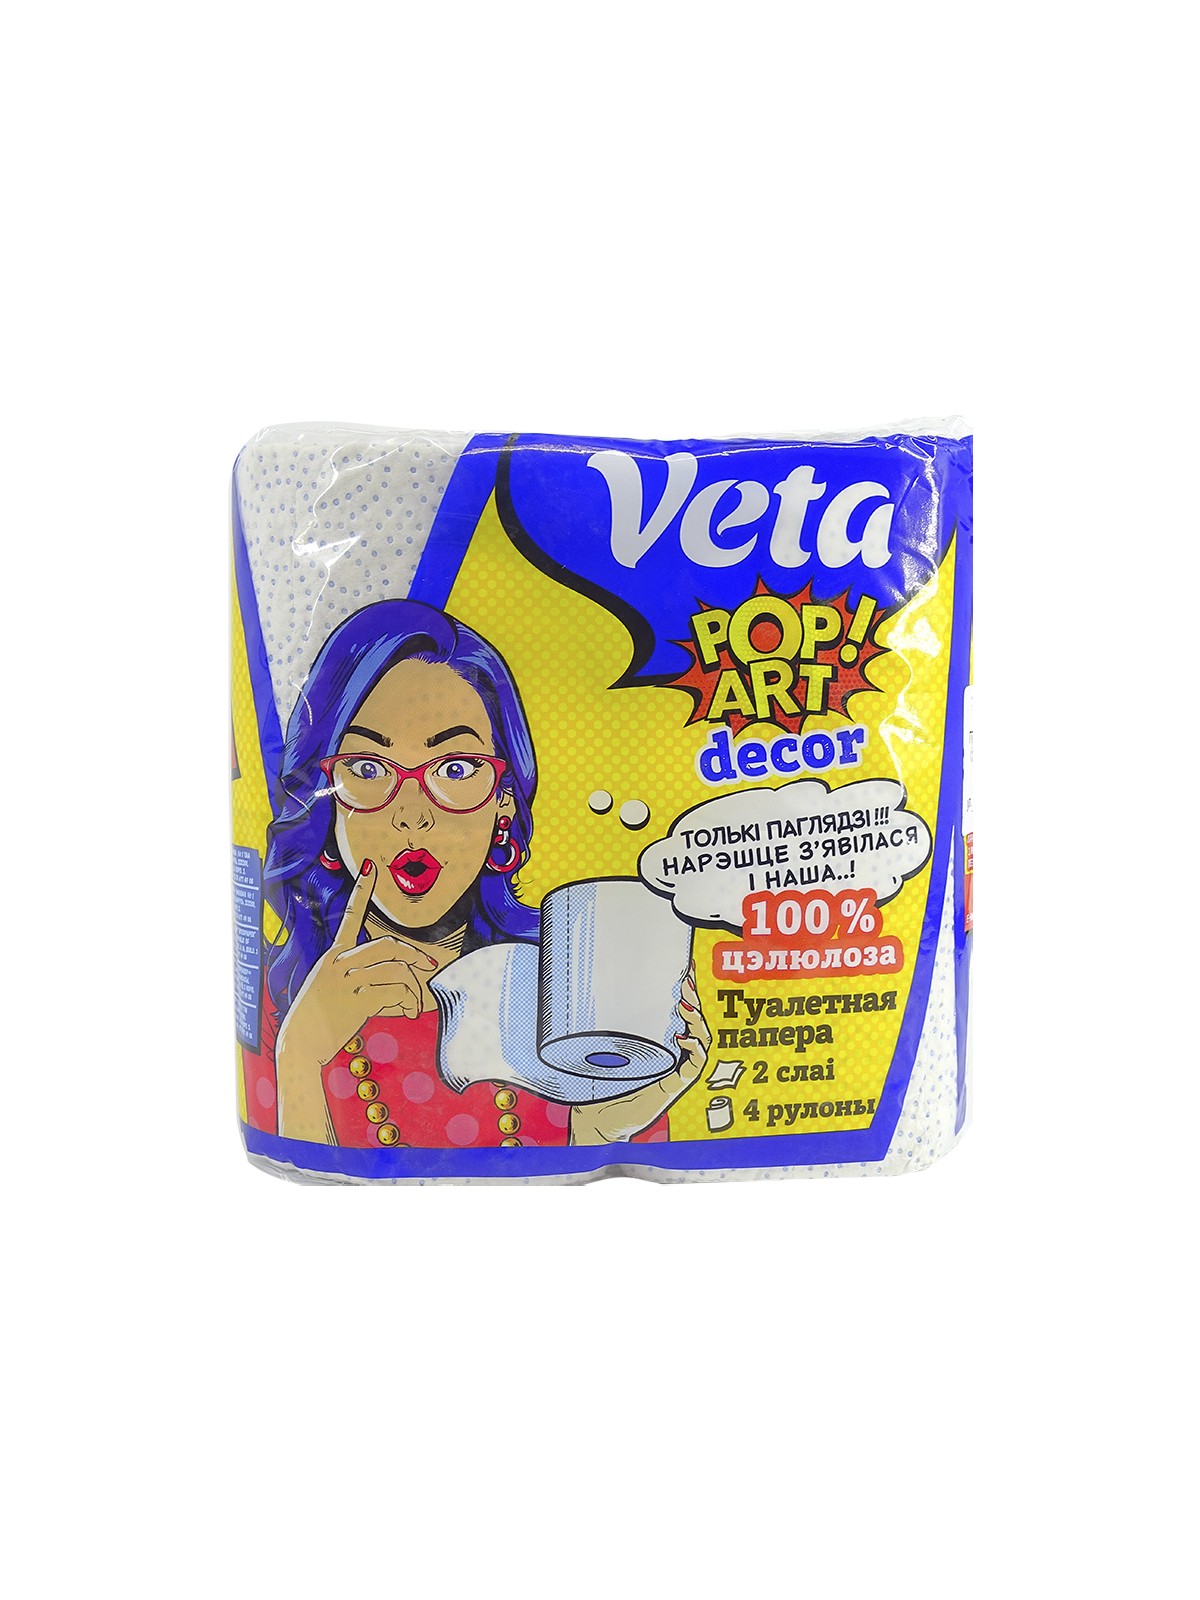 Бумага туалетная двухслойная  Veta Pop Art Decor  с рис., на втулке, 100% целлюл., 1*4 рулона